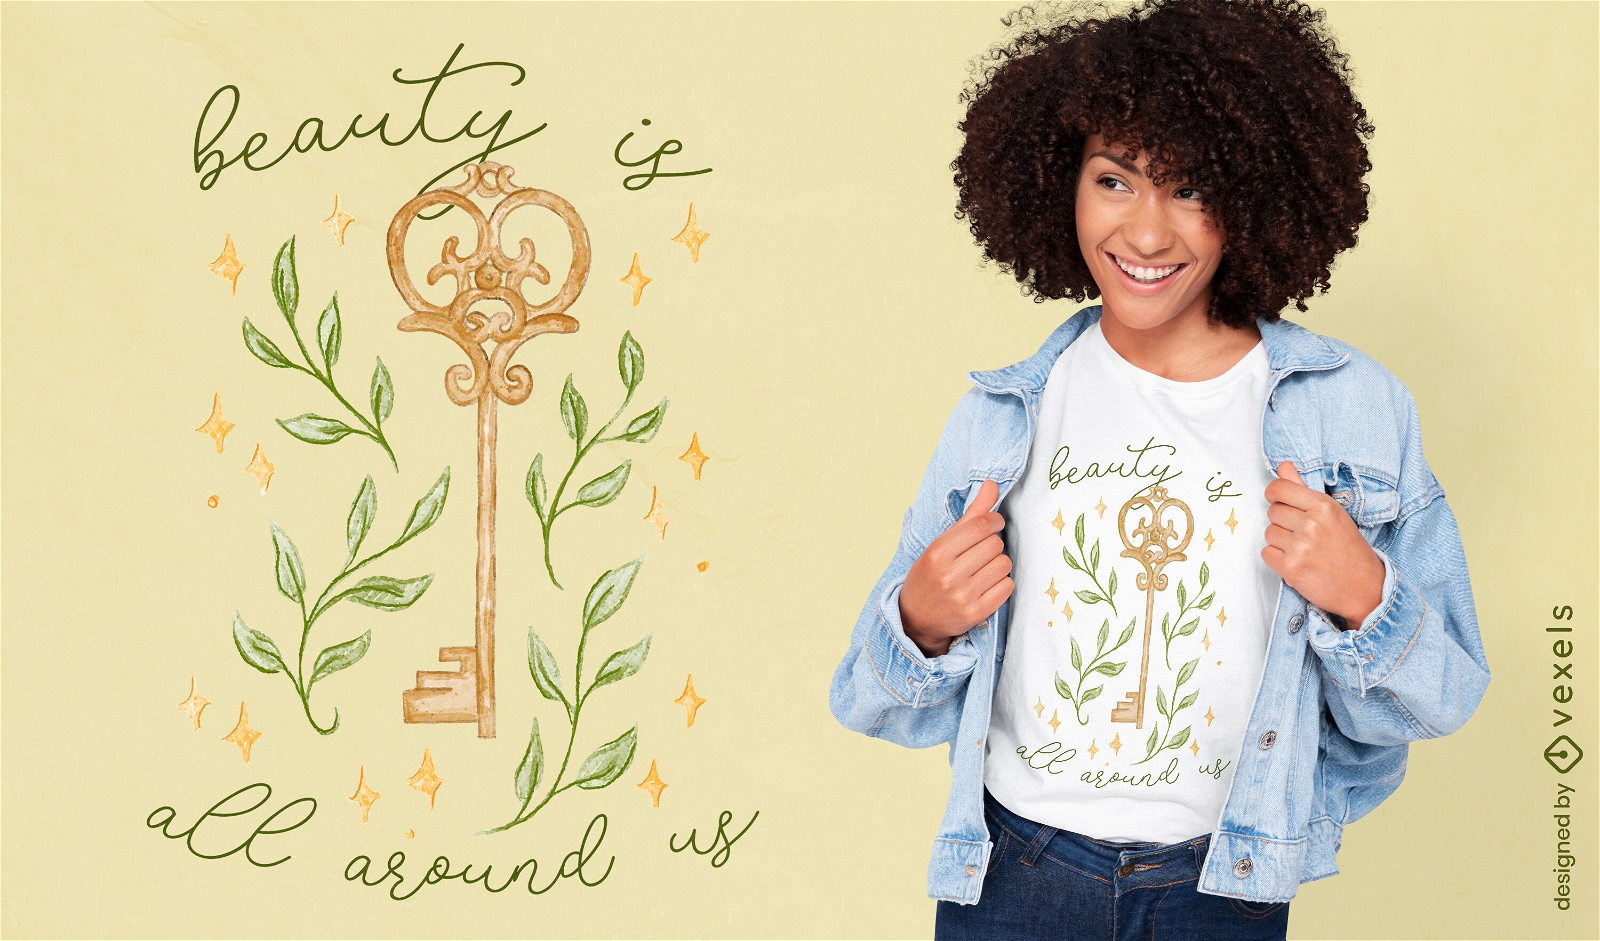 Design inspirador de camisetas com citações relacionadas à beleza